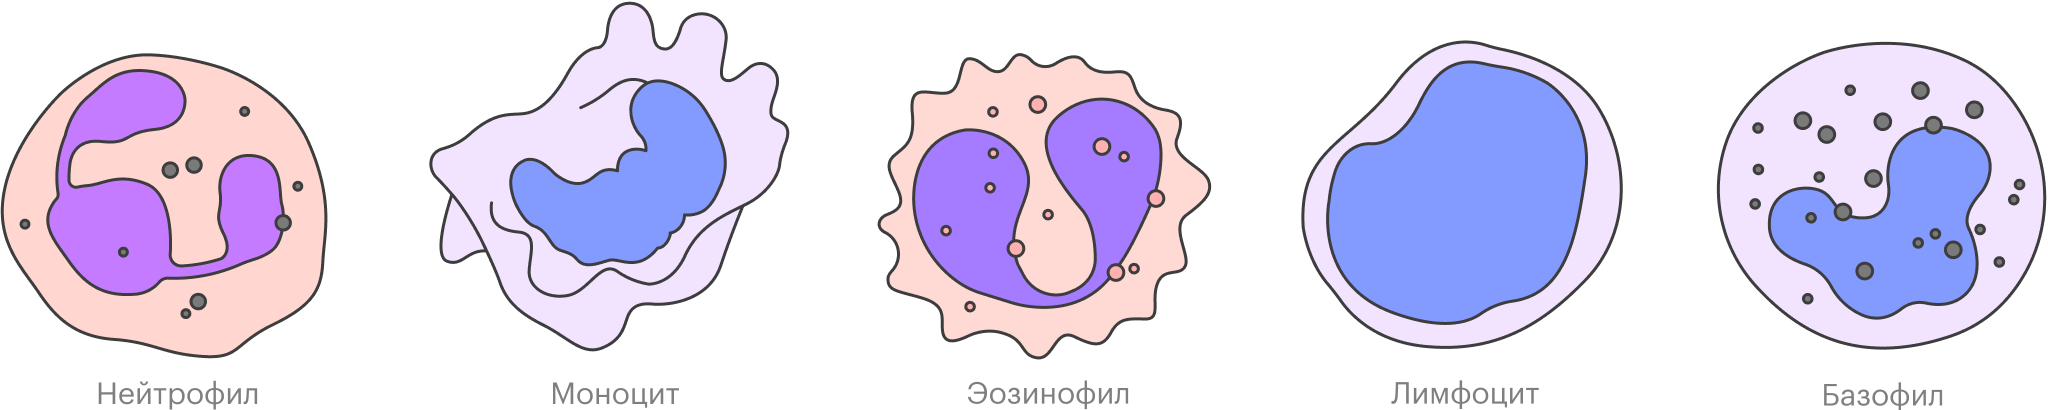 На самом деле все живые лейкоциты белые. Розовыми и синими они становятся только после окраски в лабораторных условиях — без этого их почти невозможно отличить друг от друга